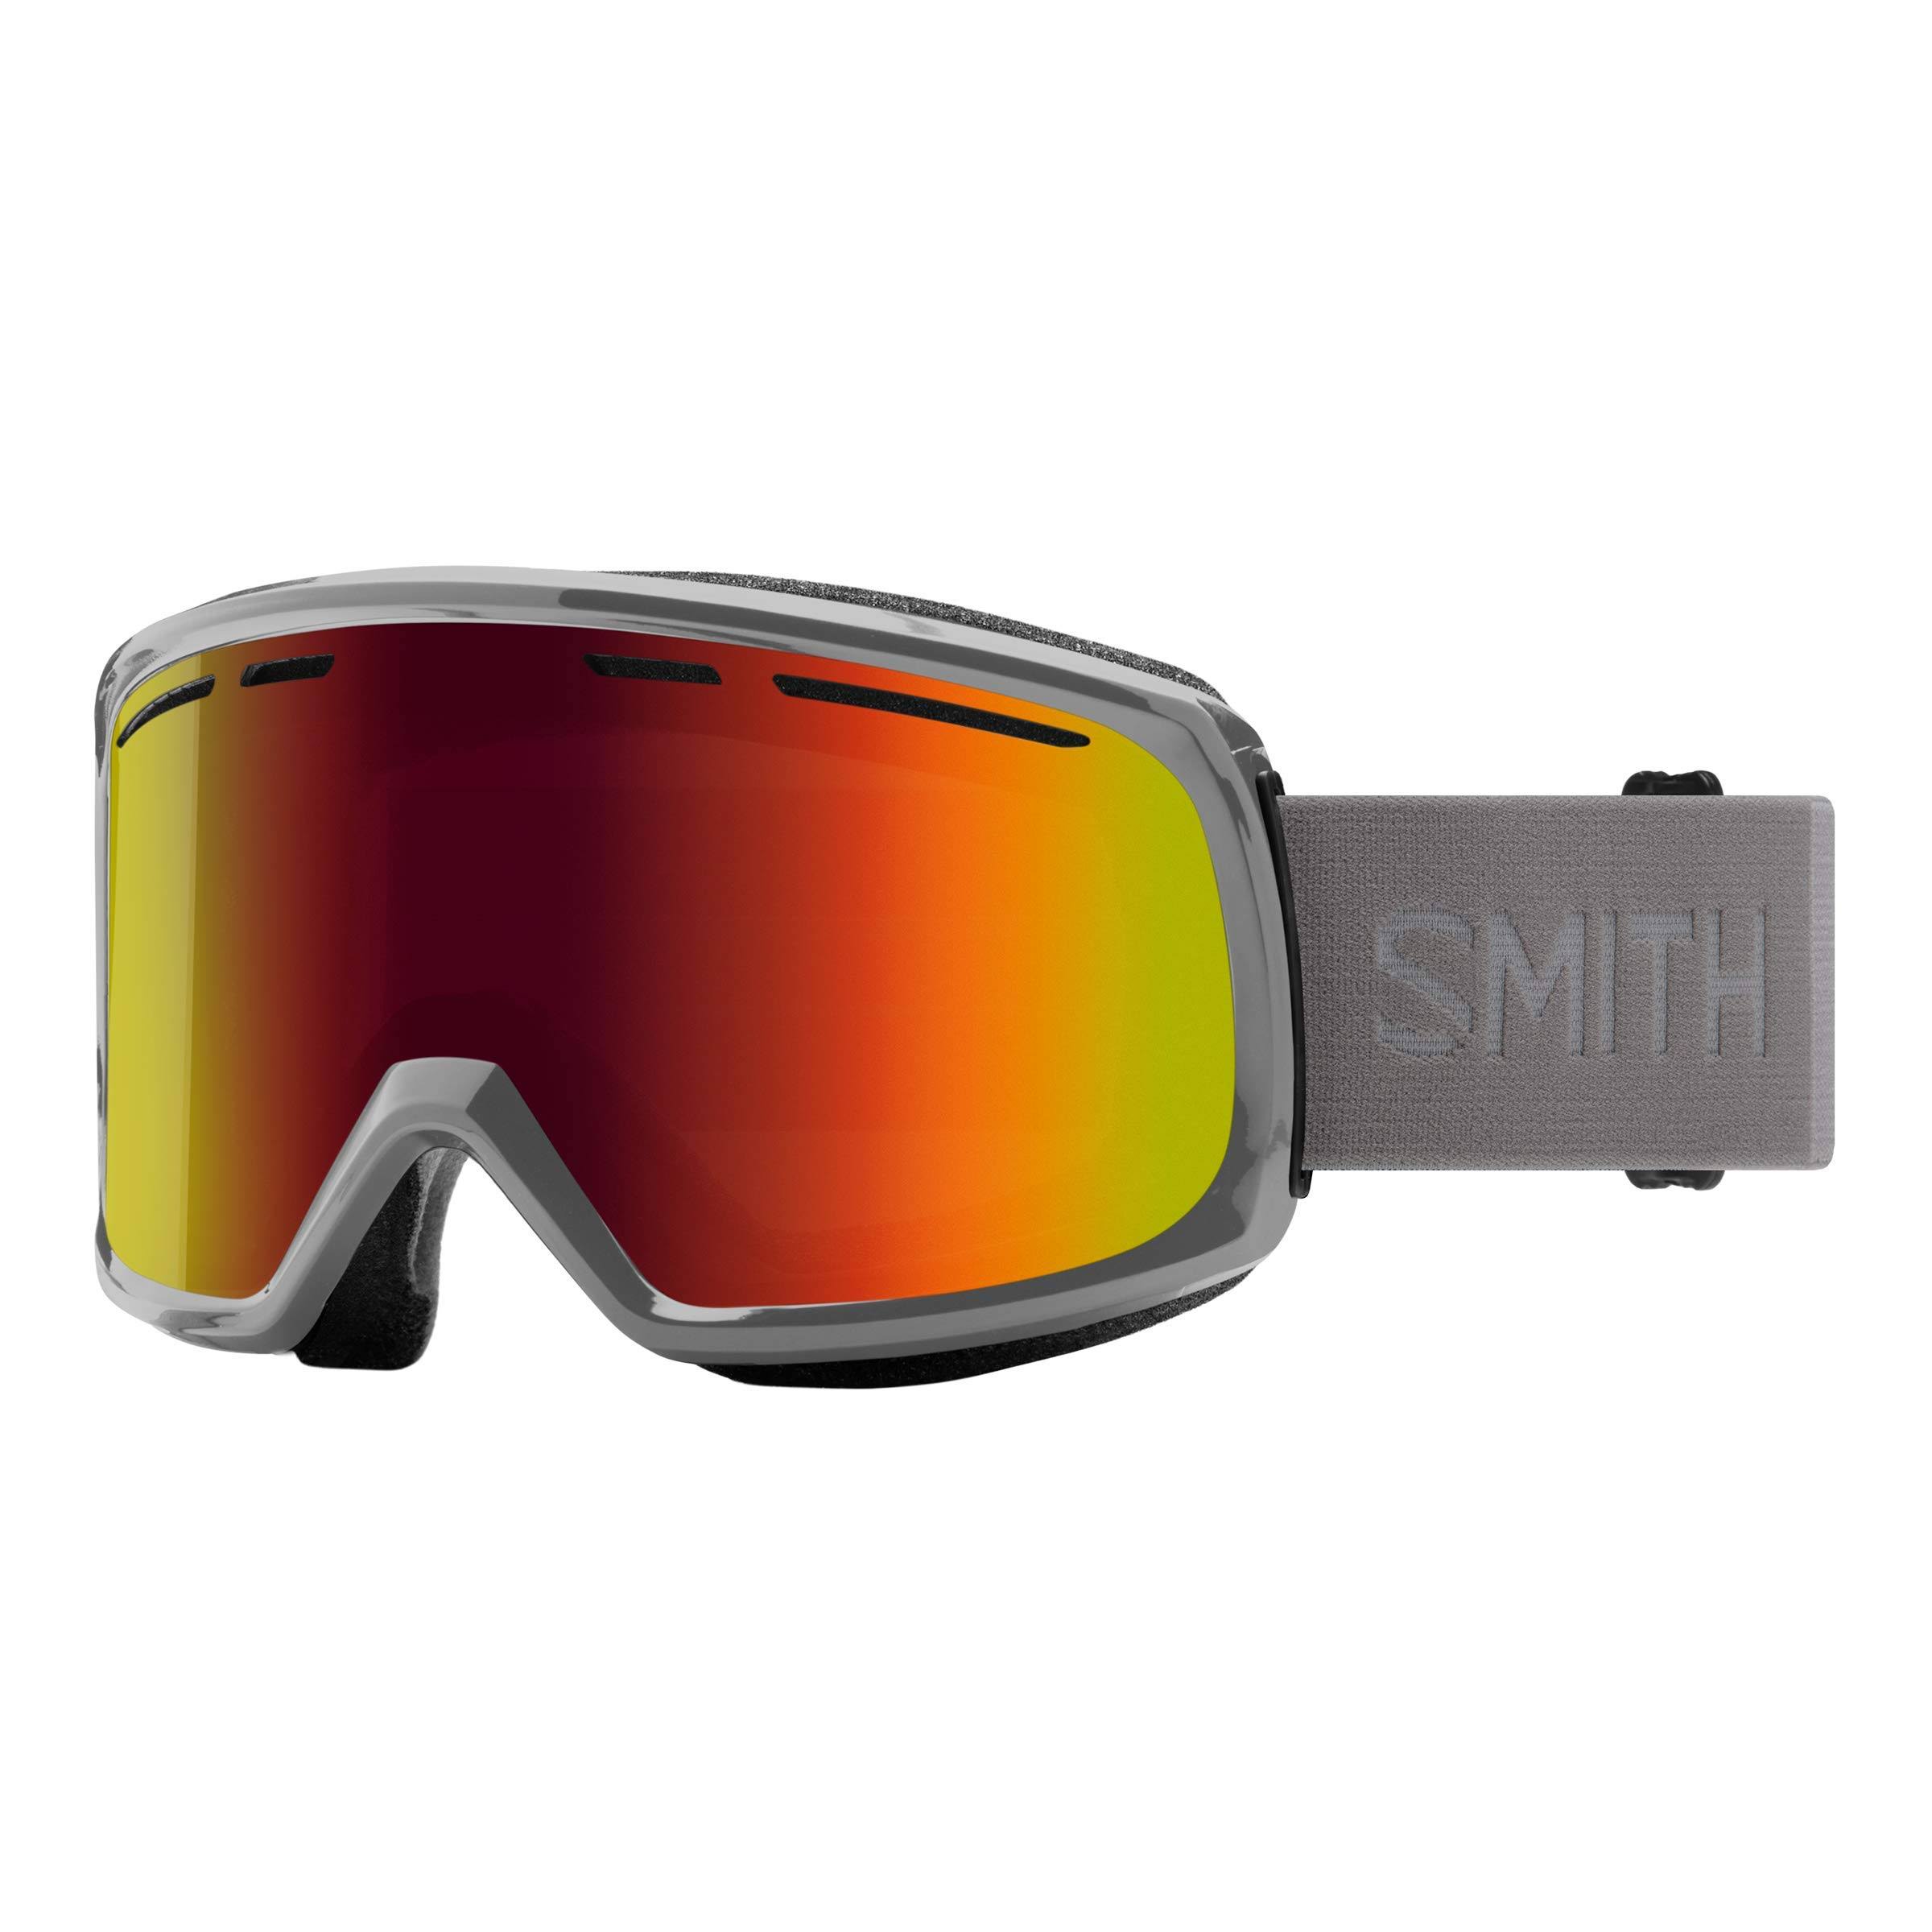 Smith Range Ski Goggles